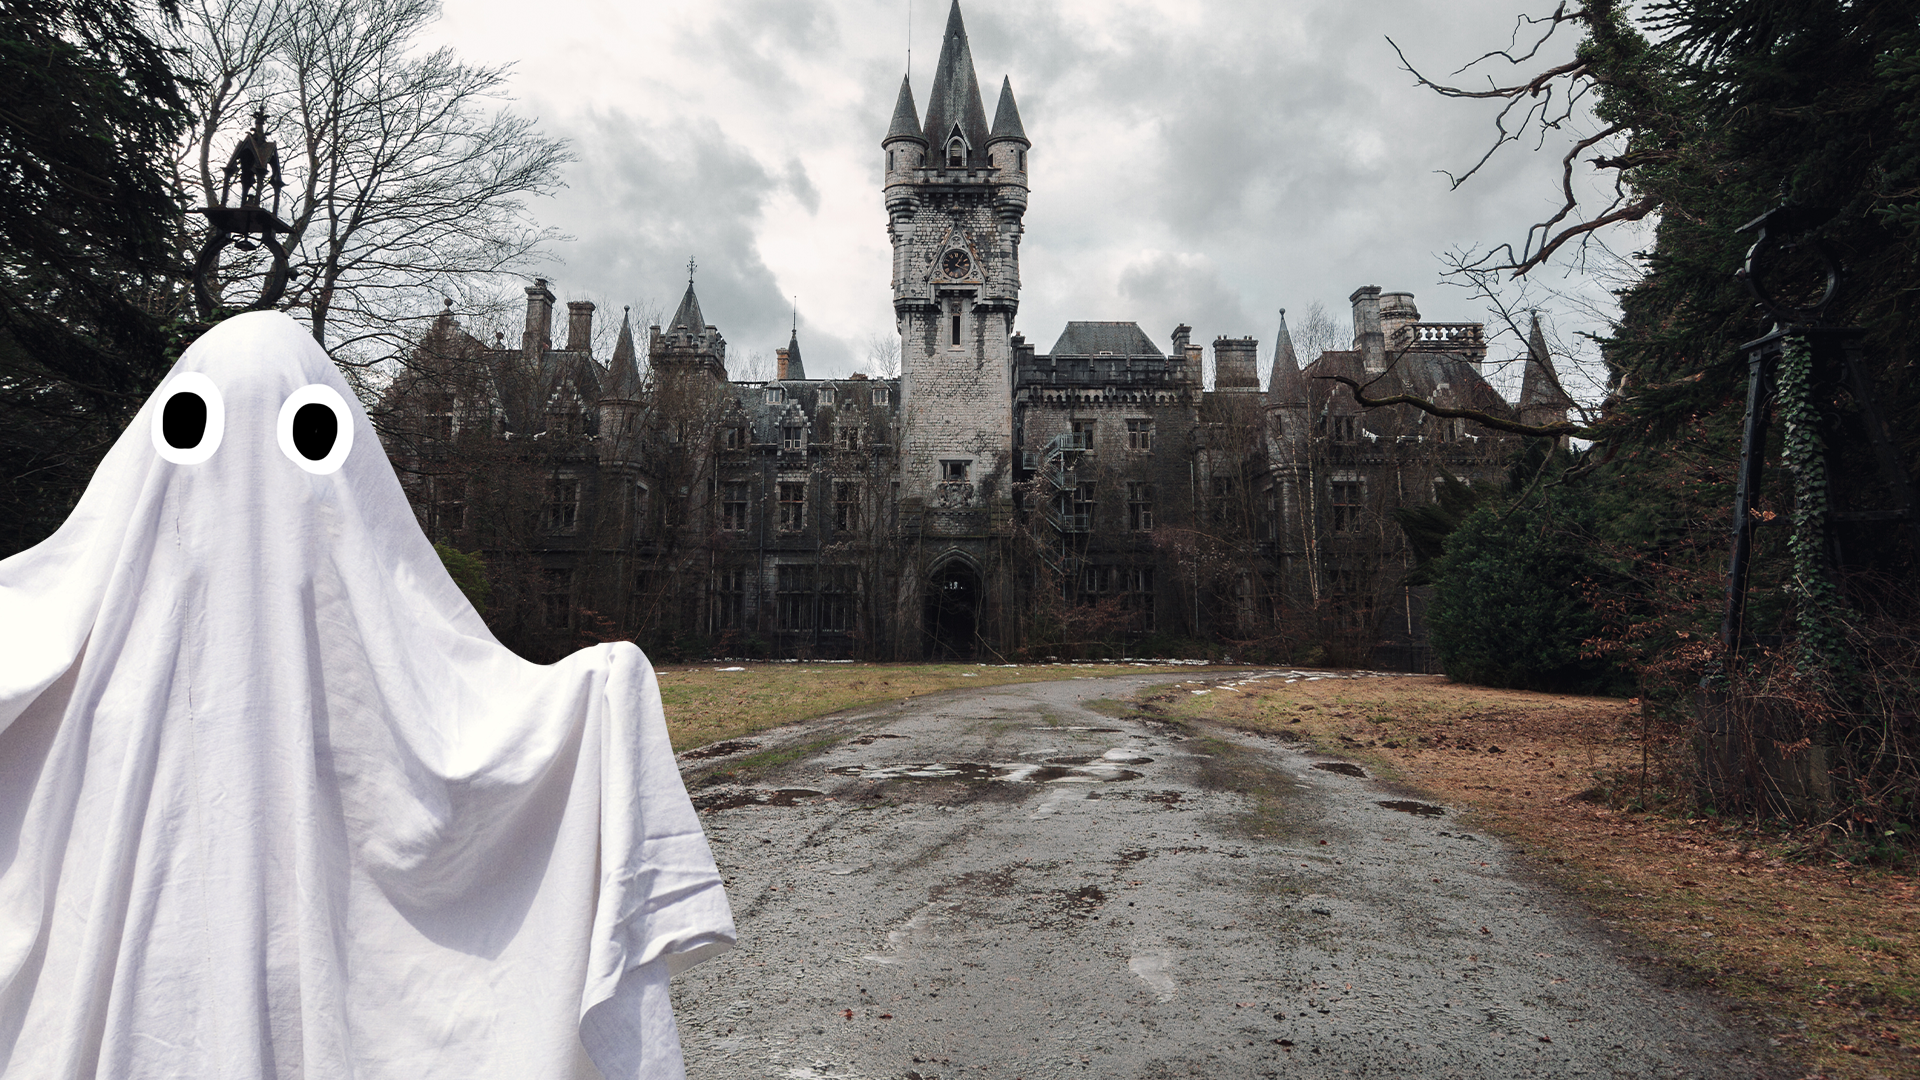 Spooky ghost outside spooky castle